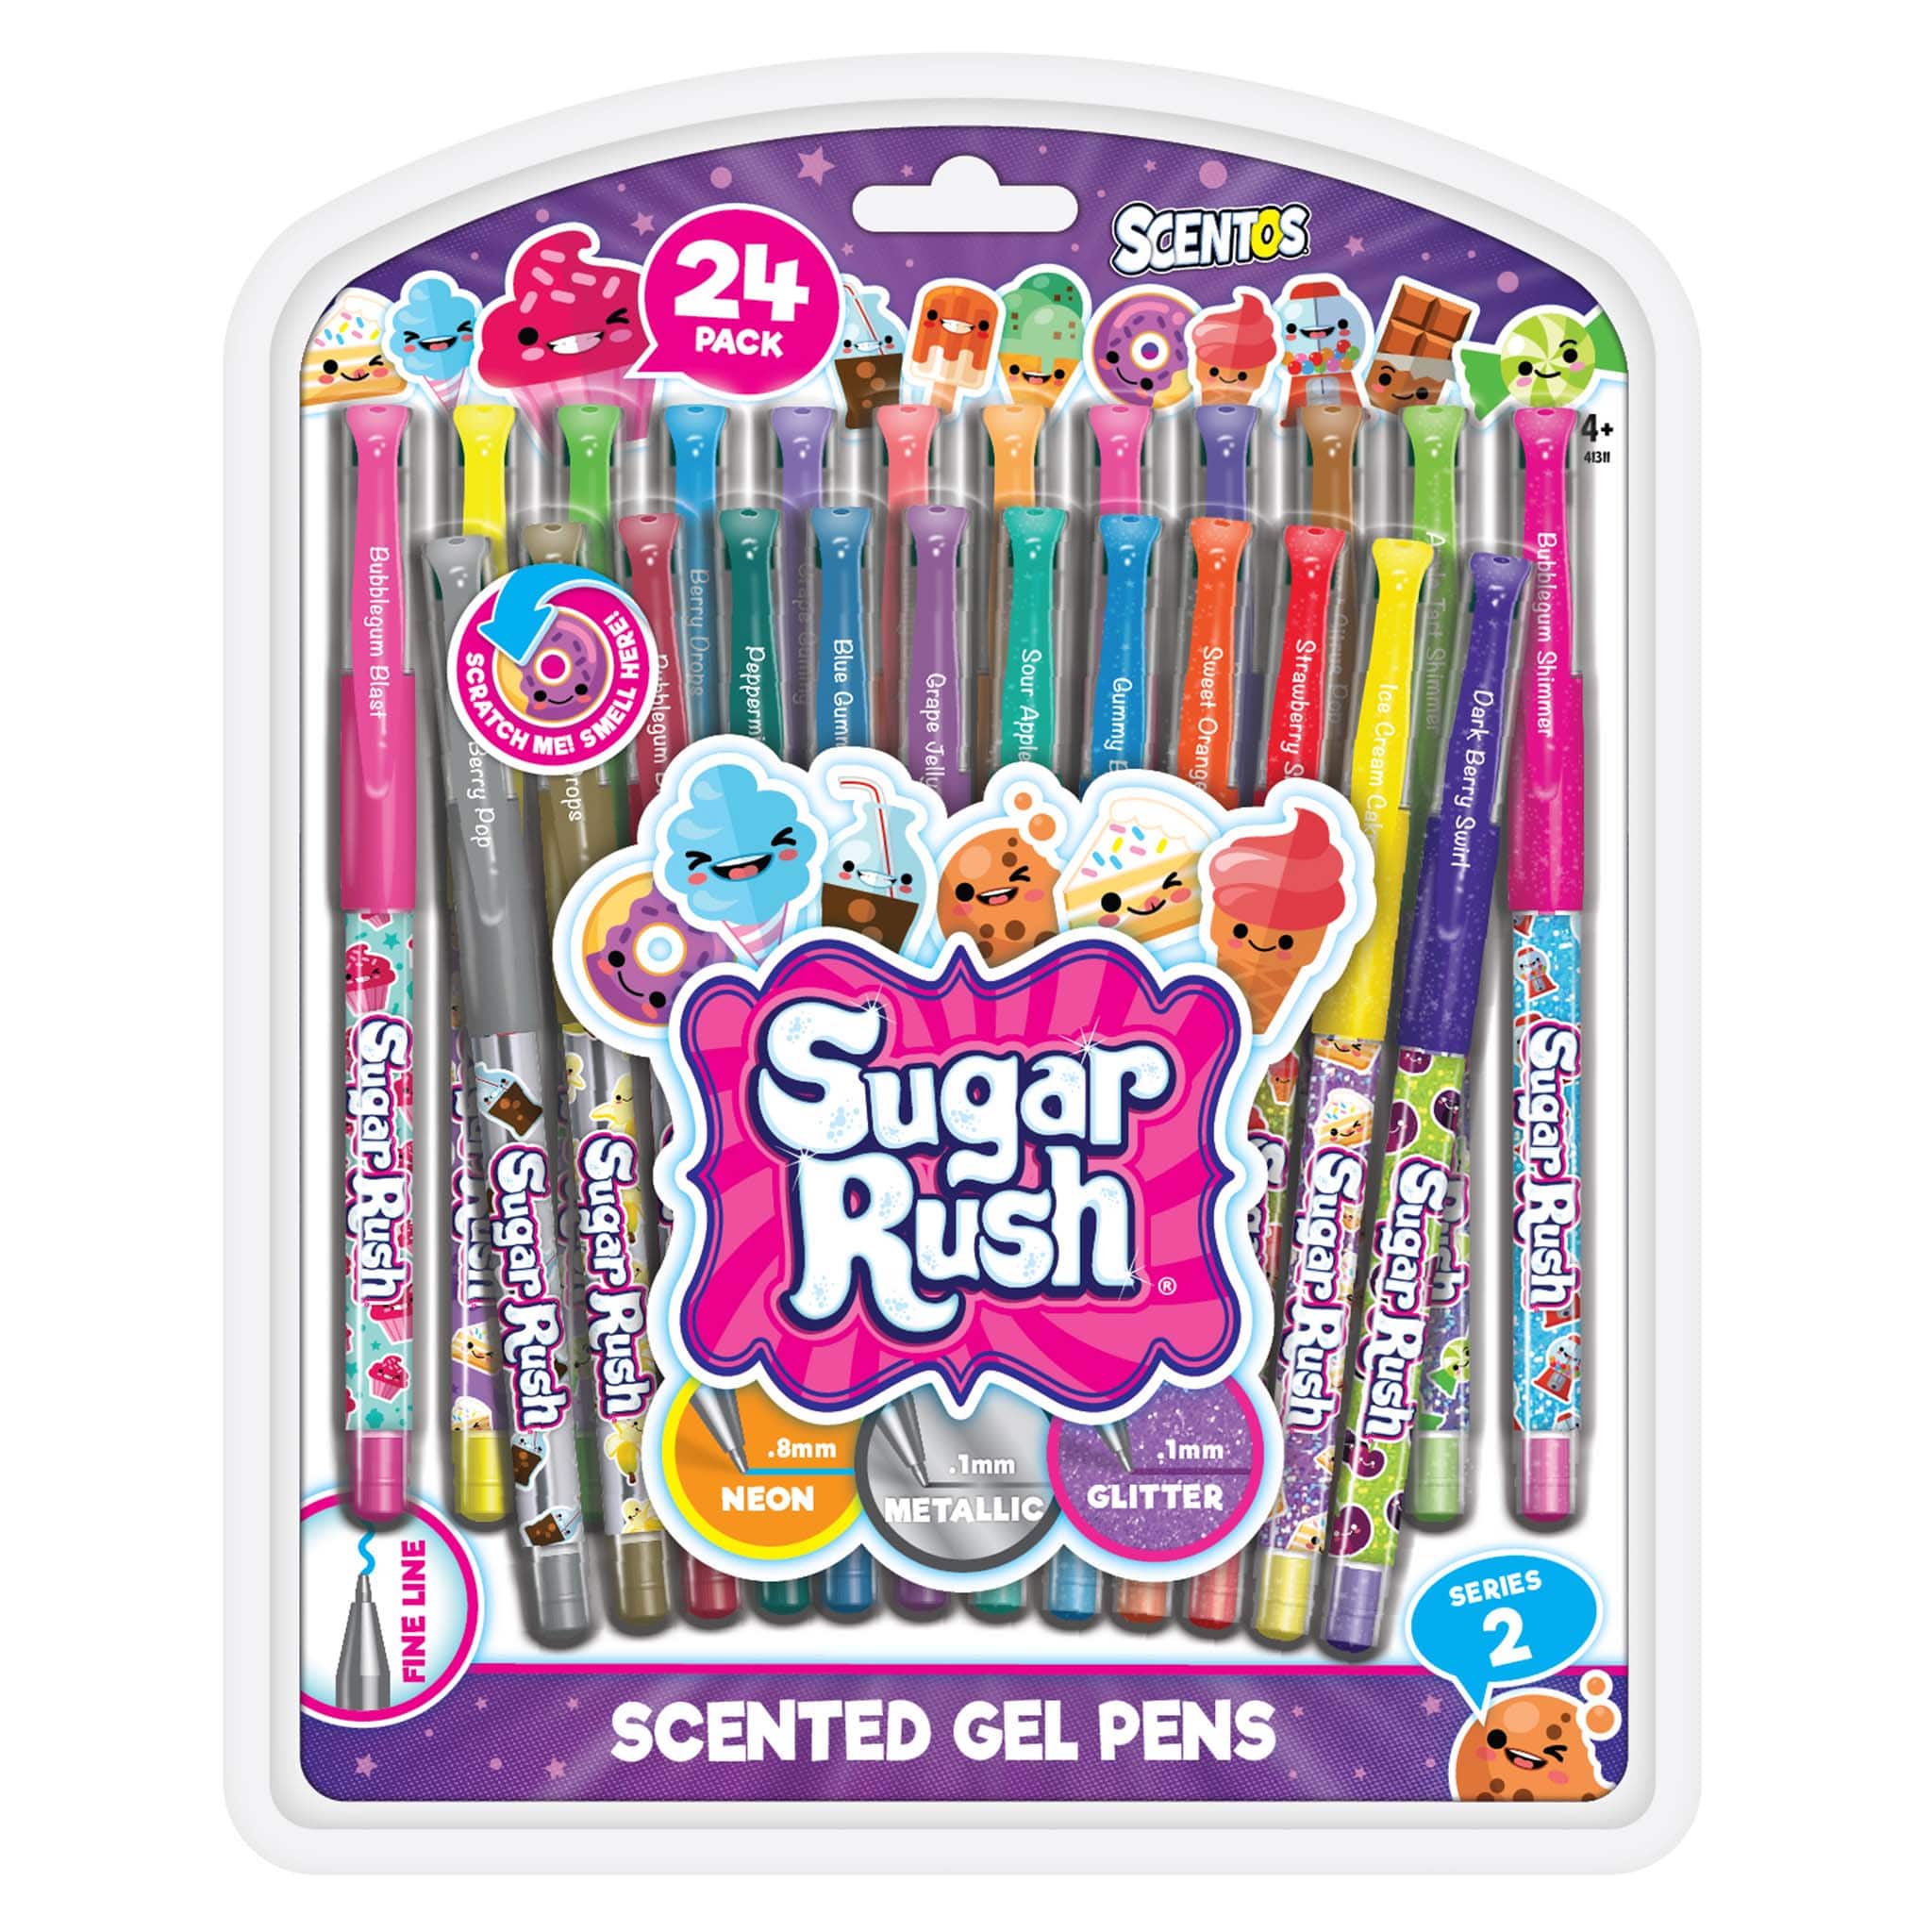 https://shopscentos.com/cdn/shop/files/shopscentos-gel-pen-sugar-rush-scented-colored-gel-pens-24-pack-set-41544458764578.jpg?v=1698250335